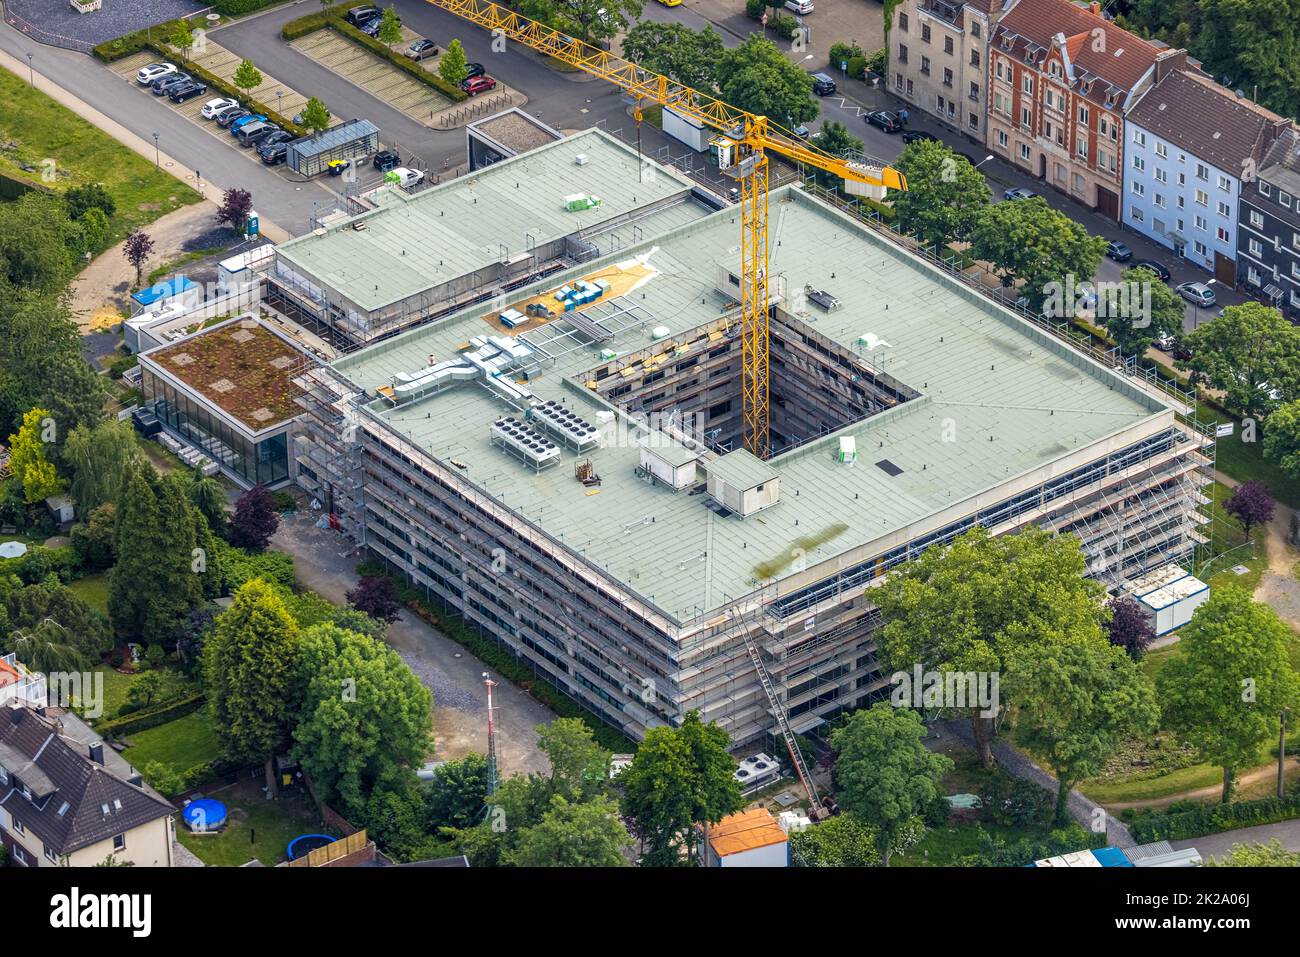 Luftbild, Baustelle Rheumazentrum Ruhrgebiet, Wanne, Herne, Ruhrgebiet, Nordrhein-Westfalen, Deutschland Stock Photo